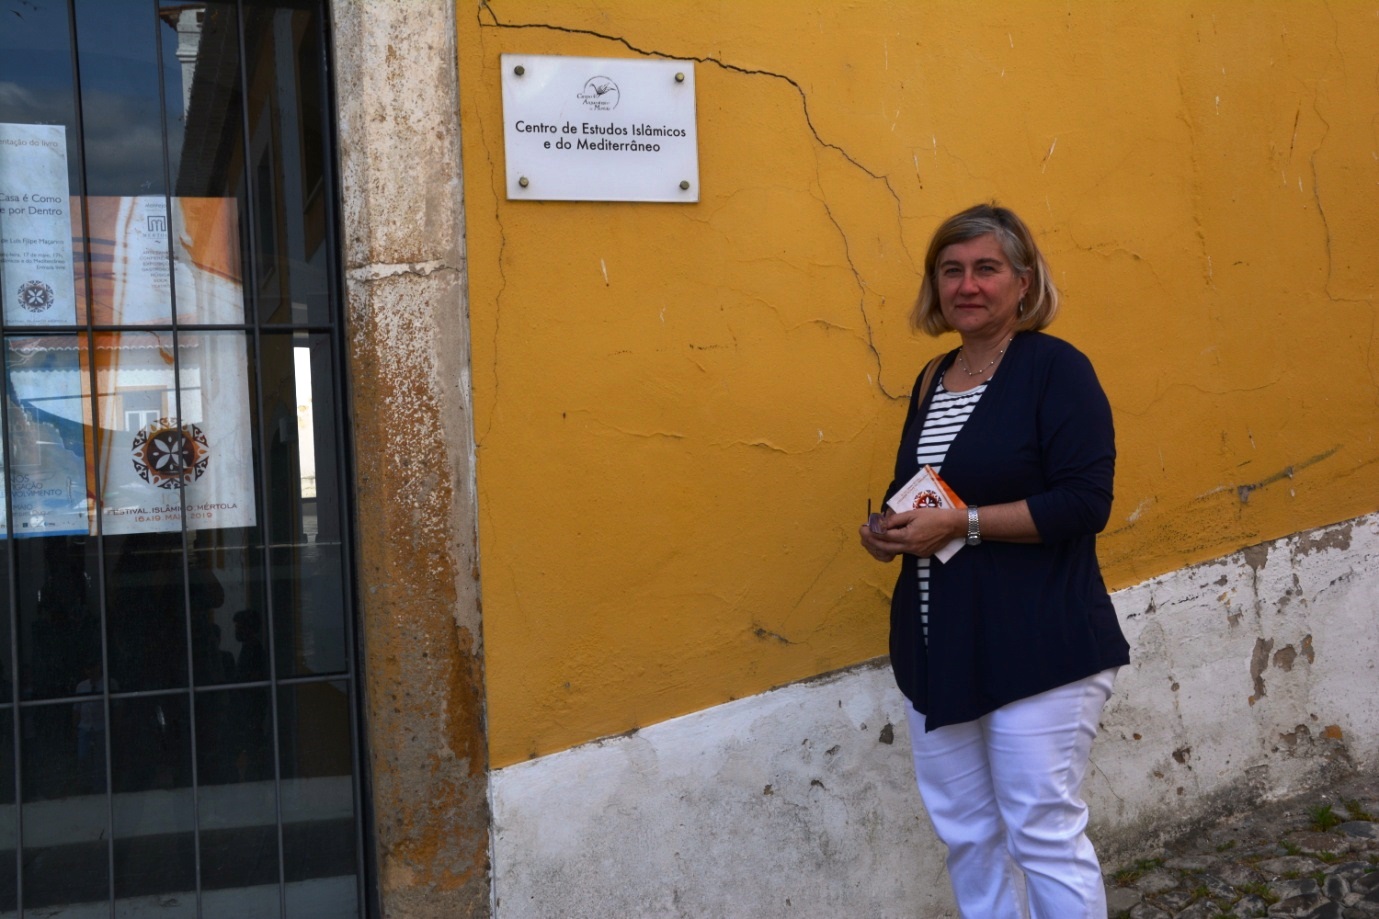  سوزانا مارتينيز أستاذة آثار وتاريخ العصور الوسطى في جامعة إيفورا البرتغالية. (photo: Marta Vidal)